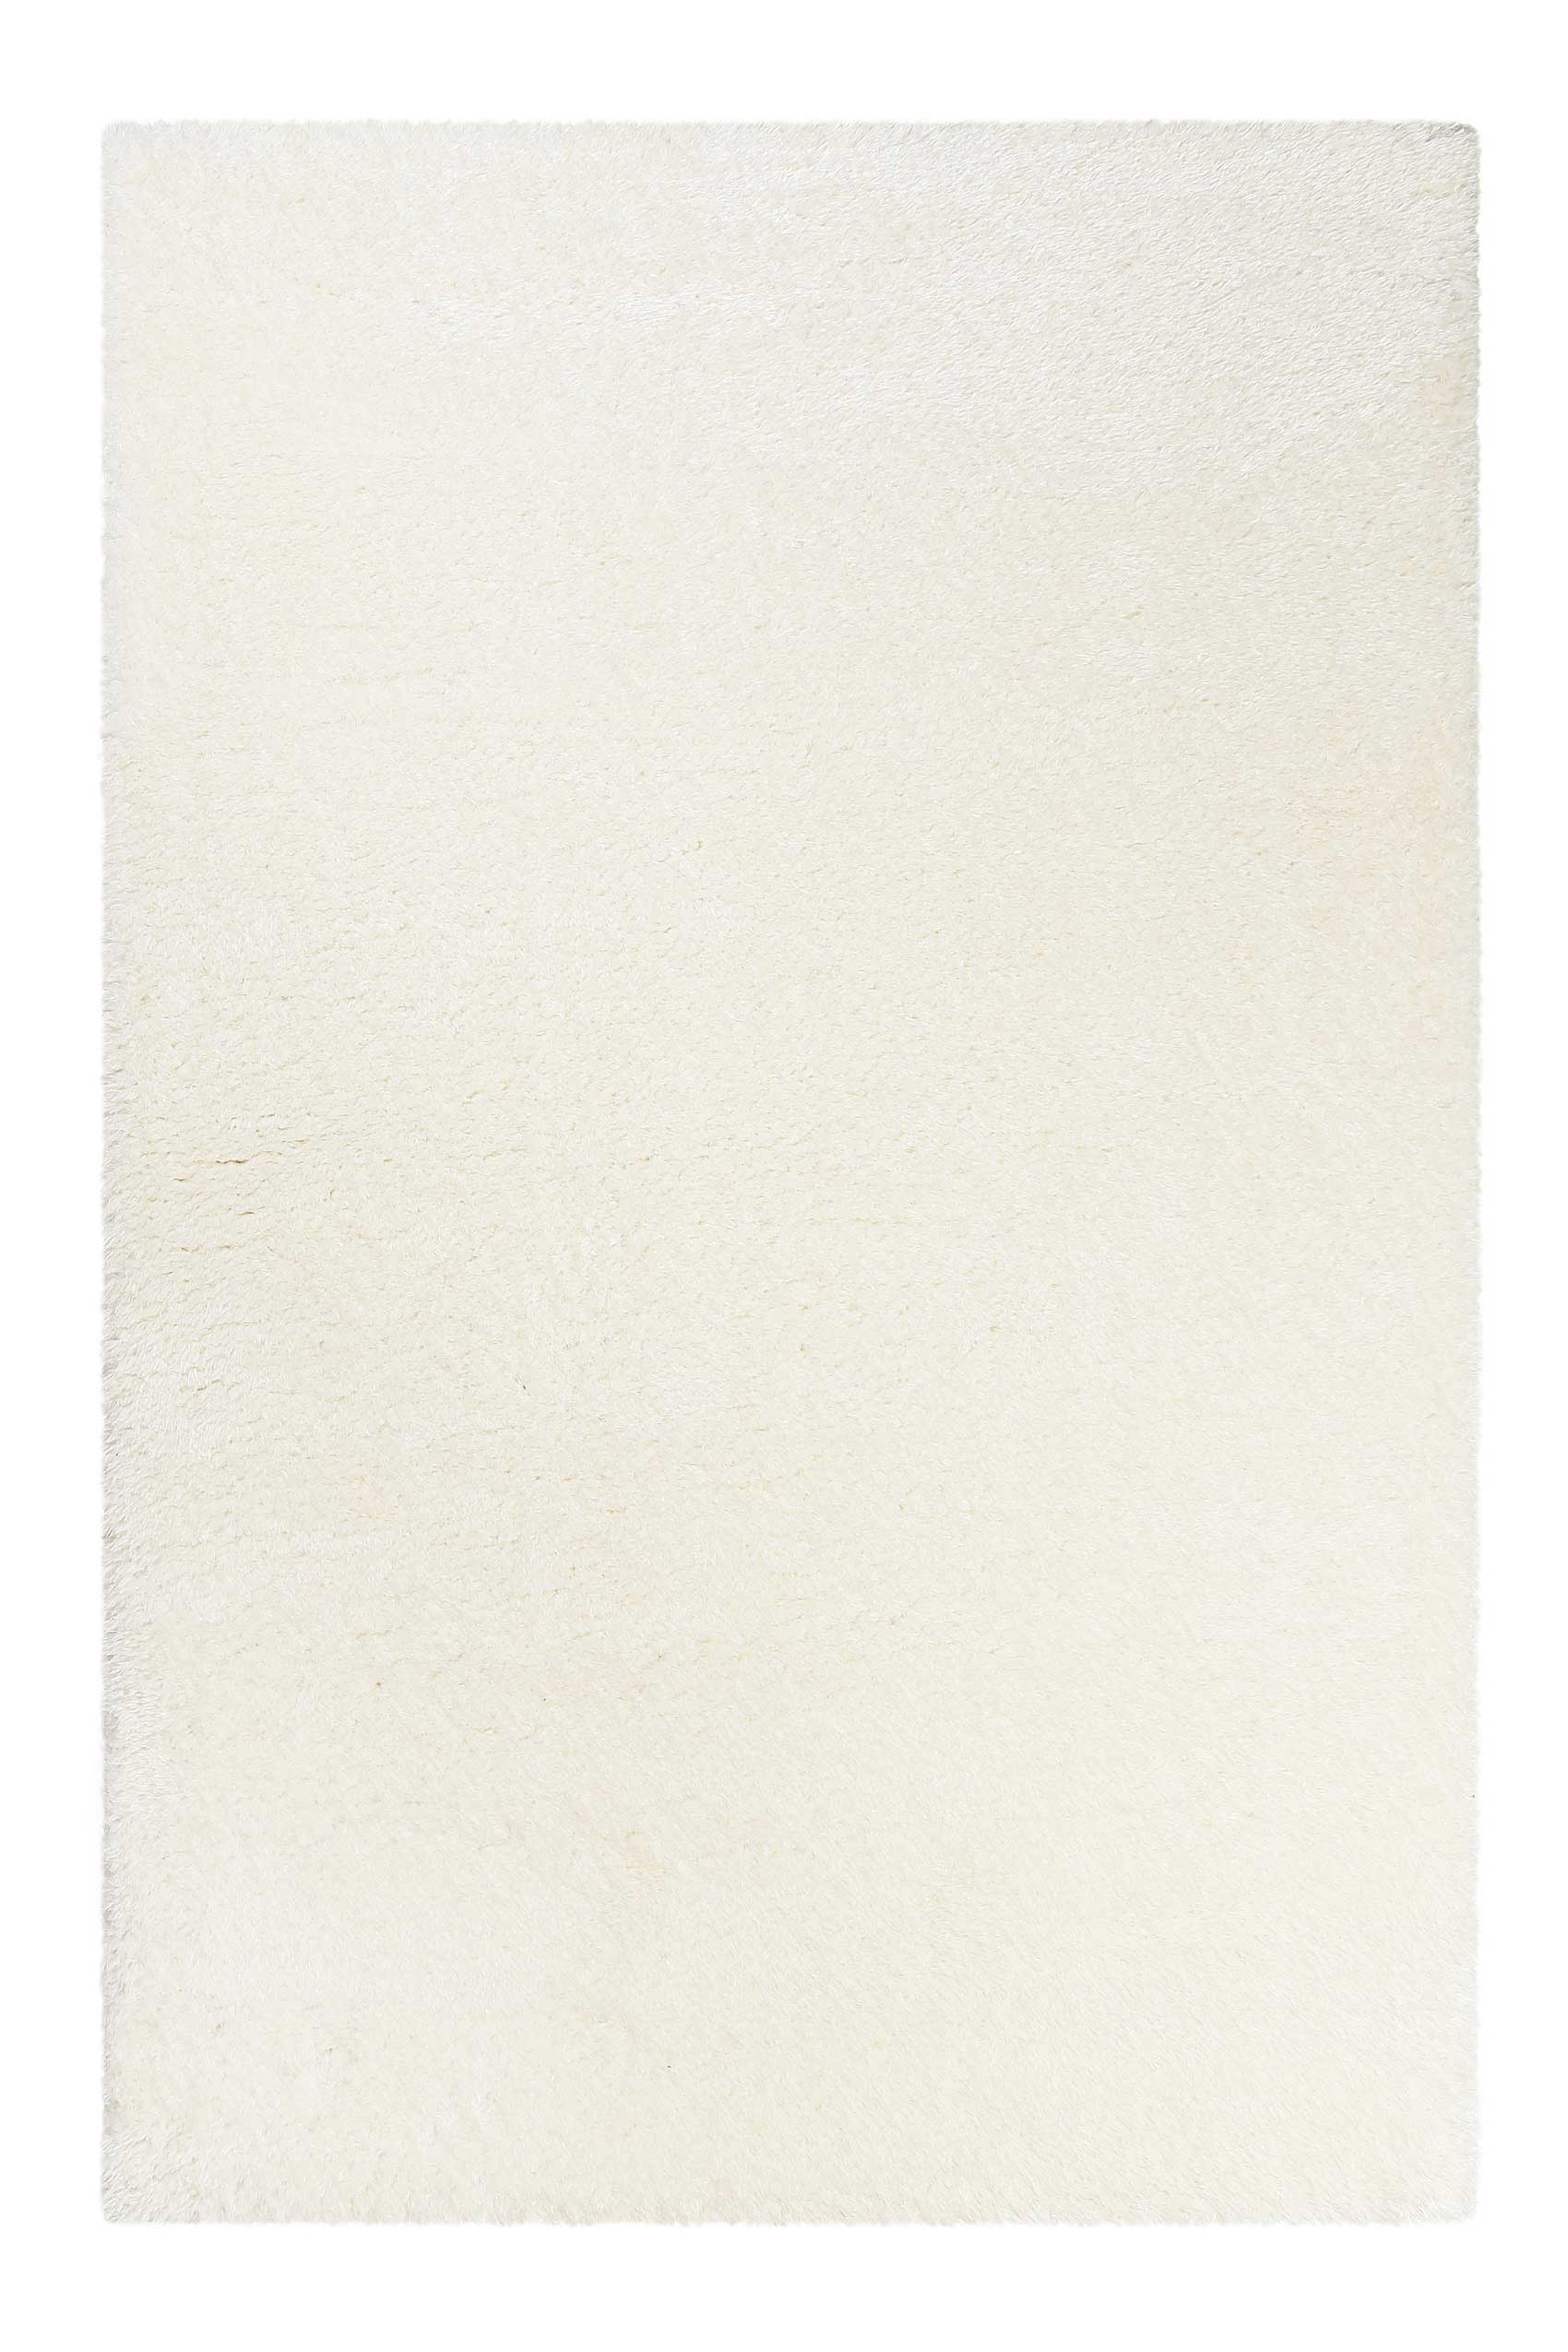 Teppich Creme Weiß Hochflor sehr kuschelig & flauschig » Parma « Homie Living - Ansicht 2